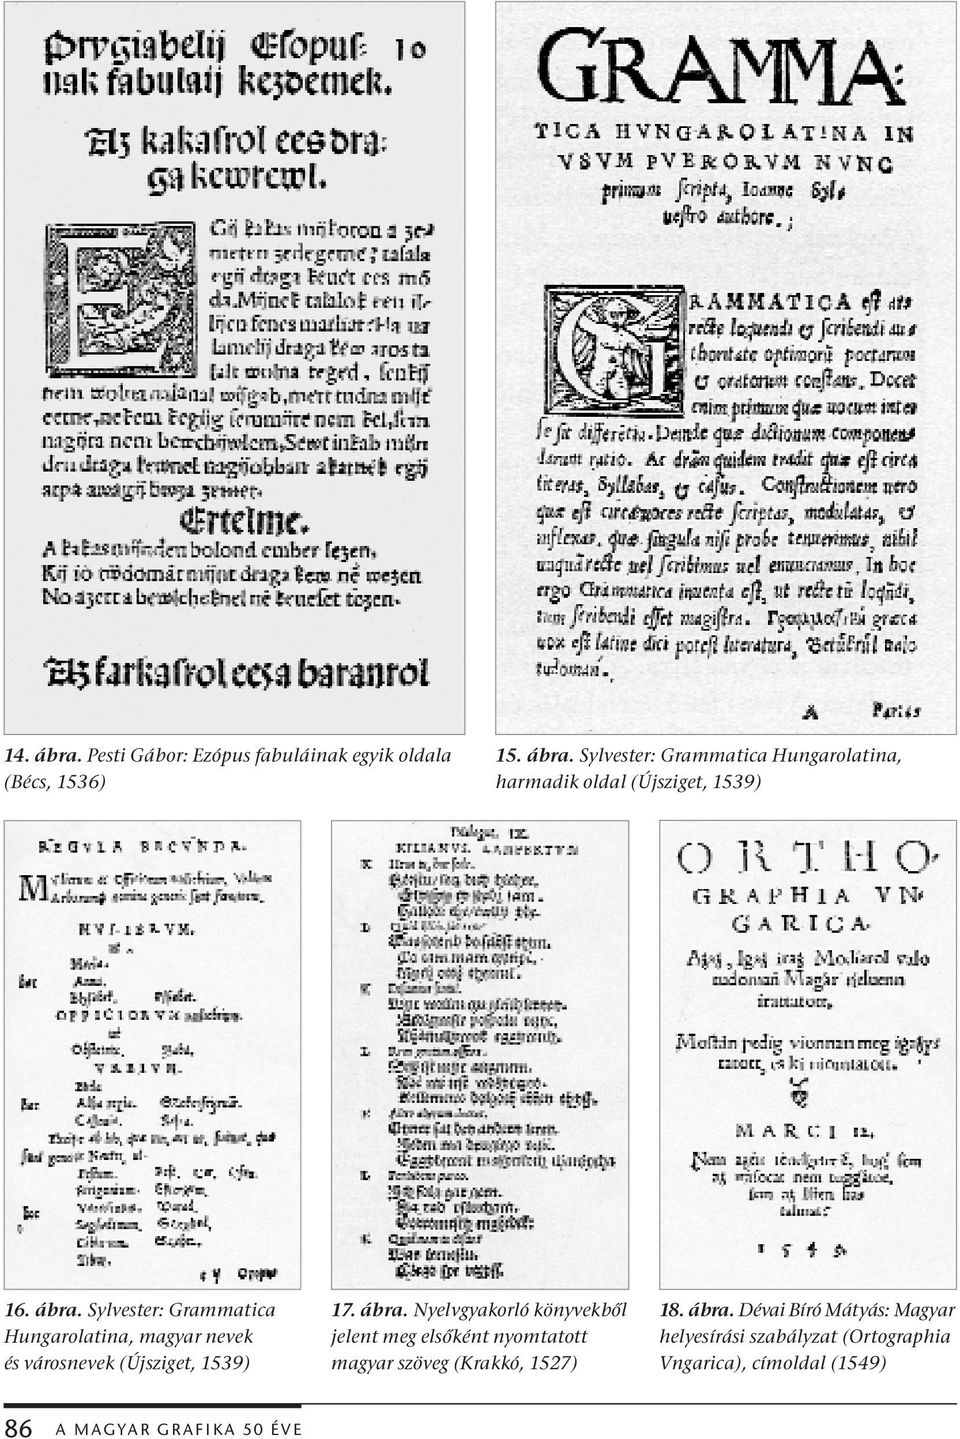 Nyelvgyakorló könyvekből jelent meg elsőként nyomtatott magyar szöveg (Krakkó, 1527) 18. ábra.